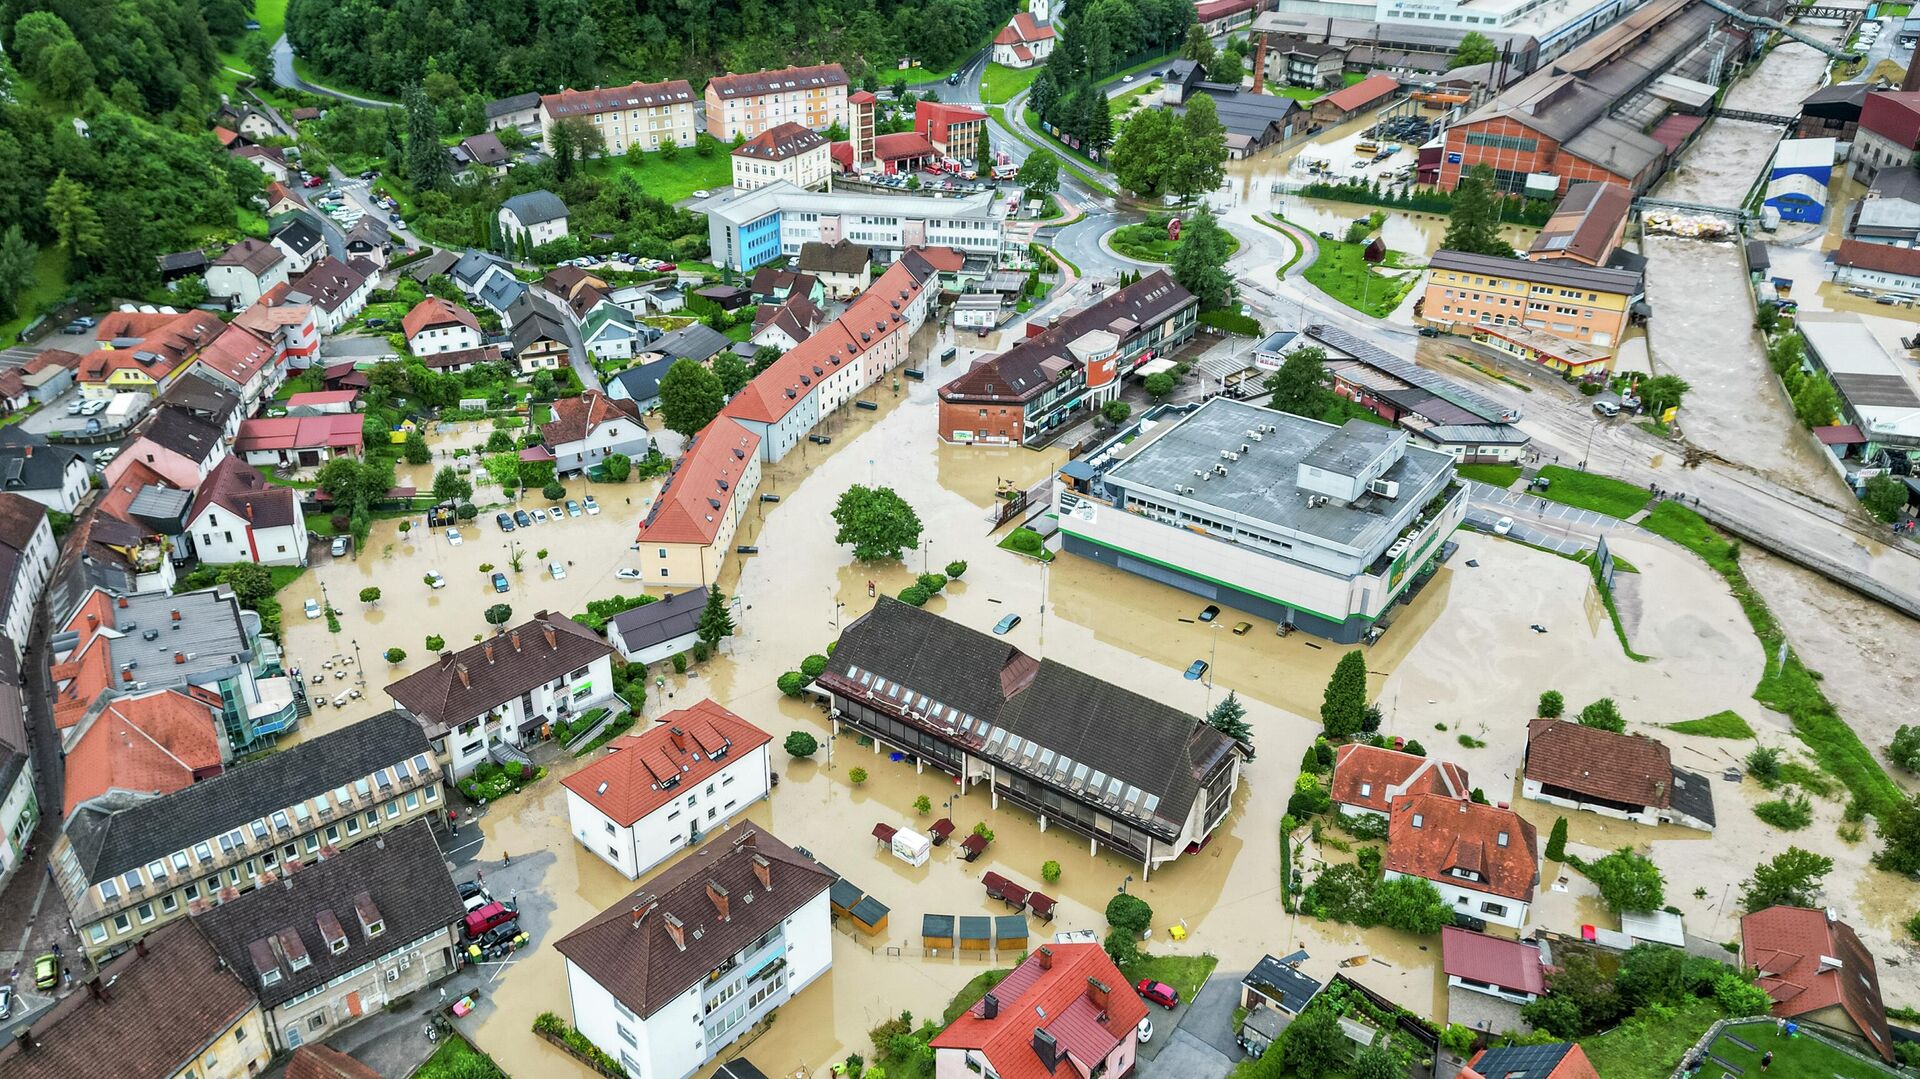 Dra матические сцены из Словении : Армия опубликовала кадры затопленных территорий /видео/